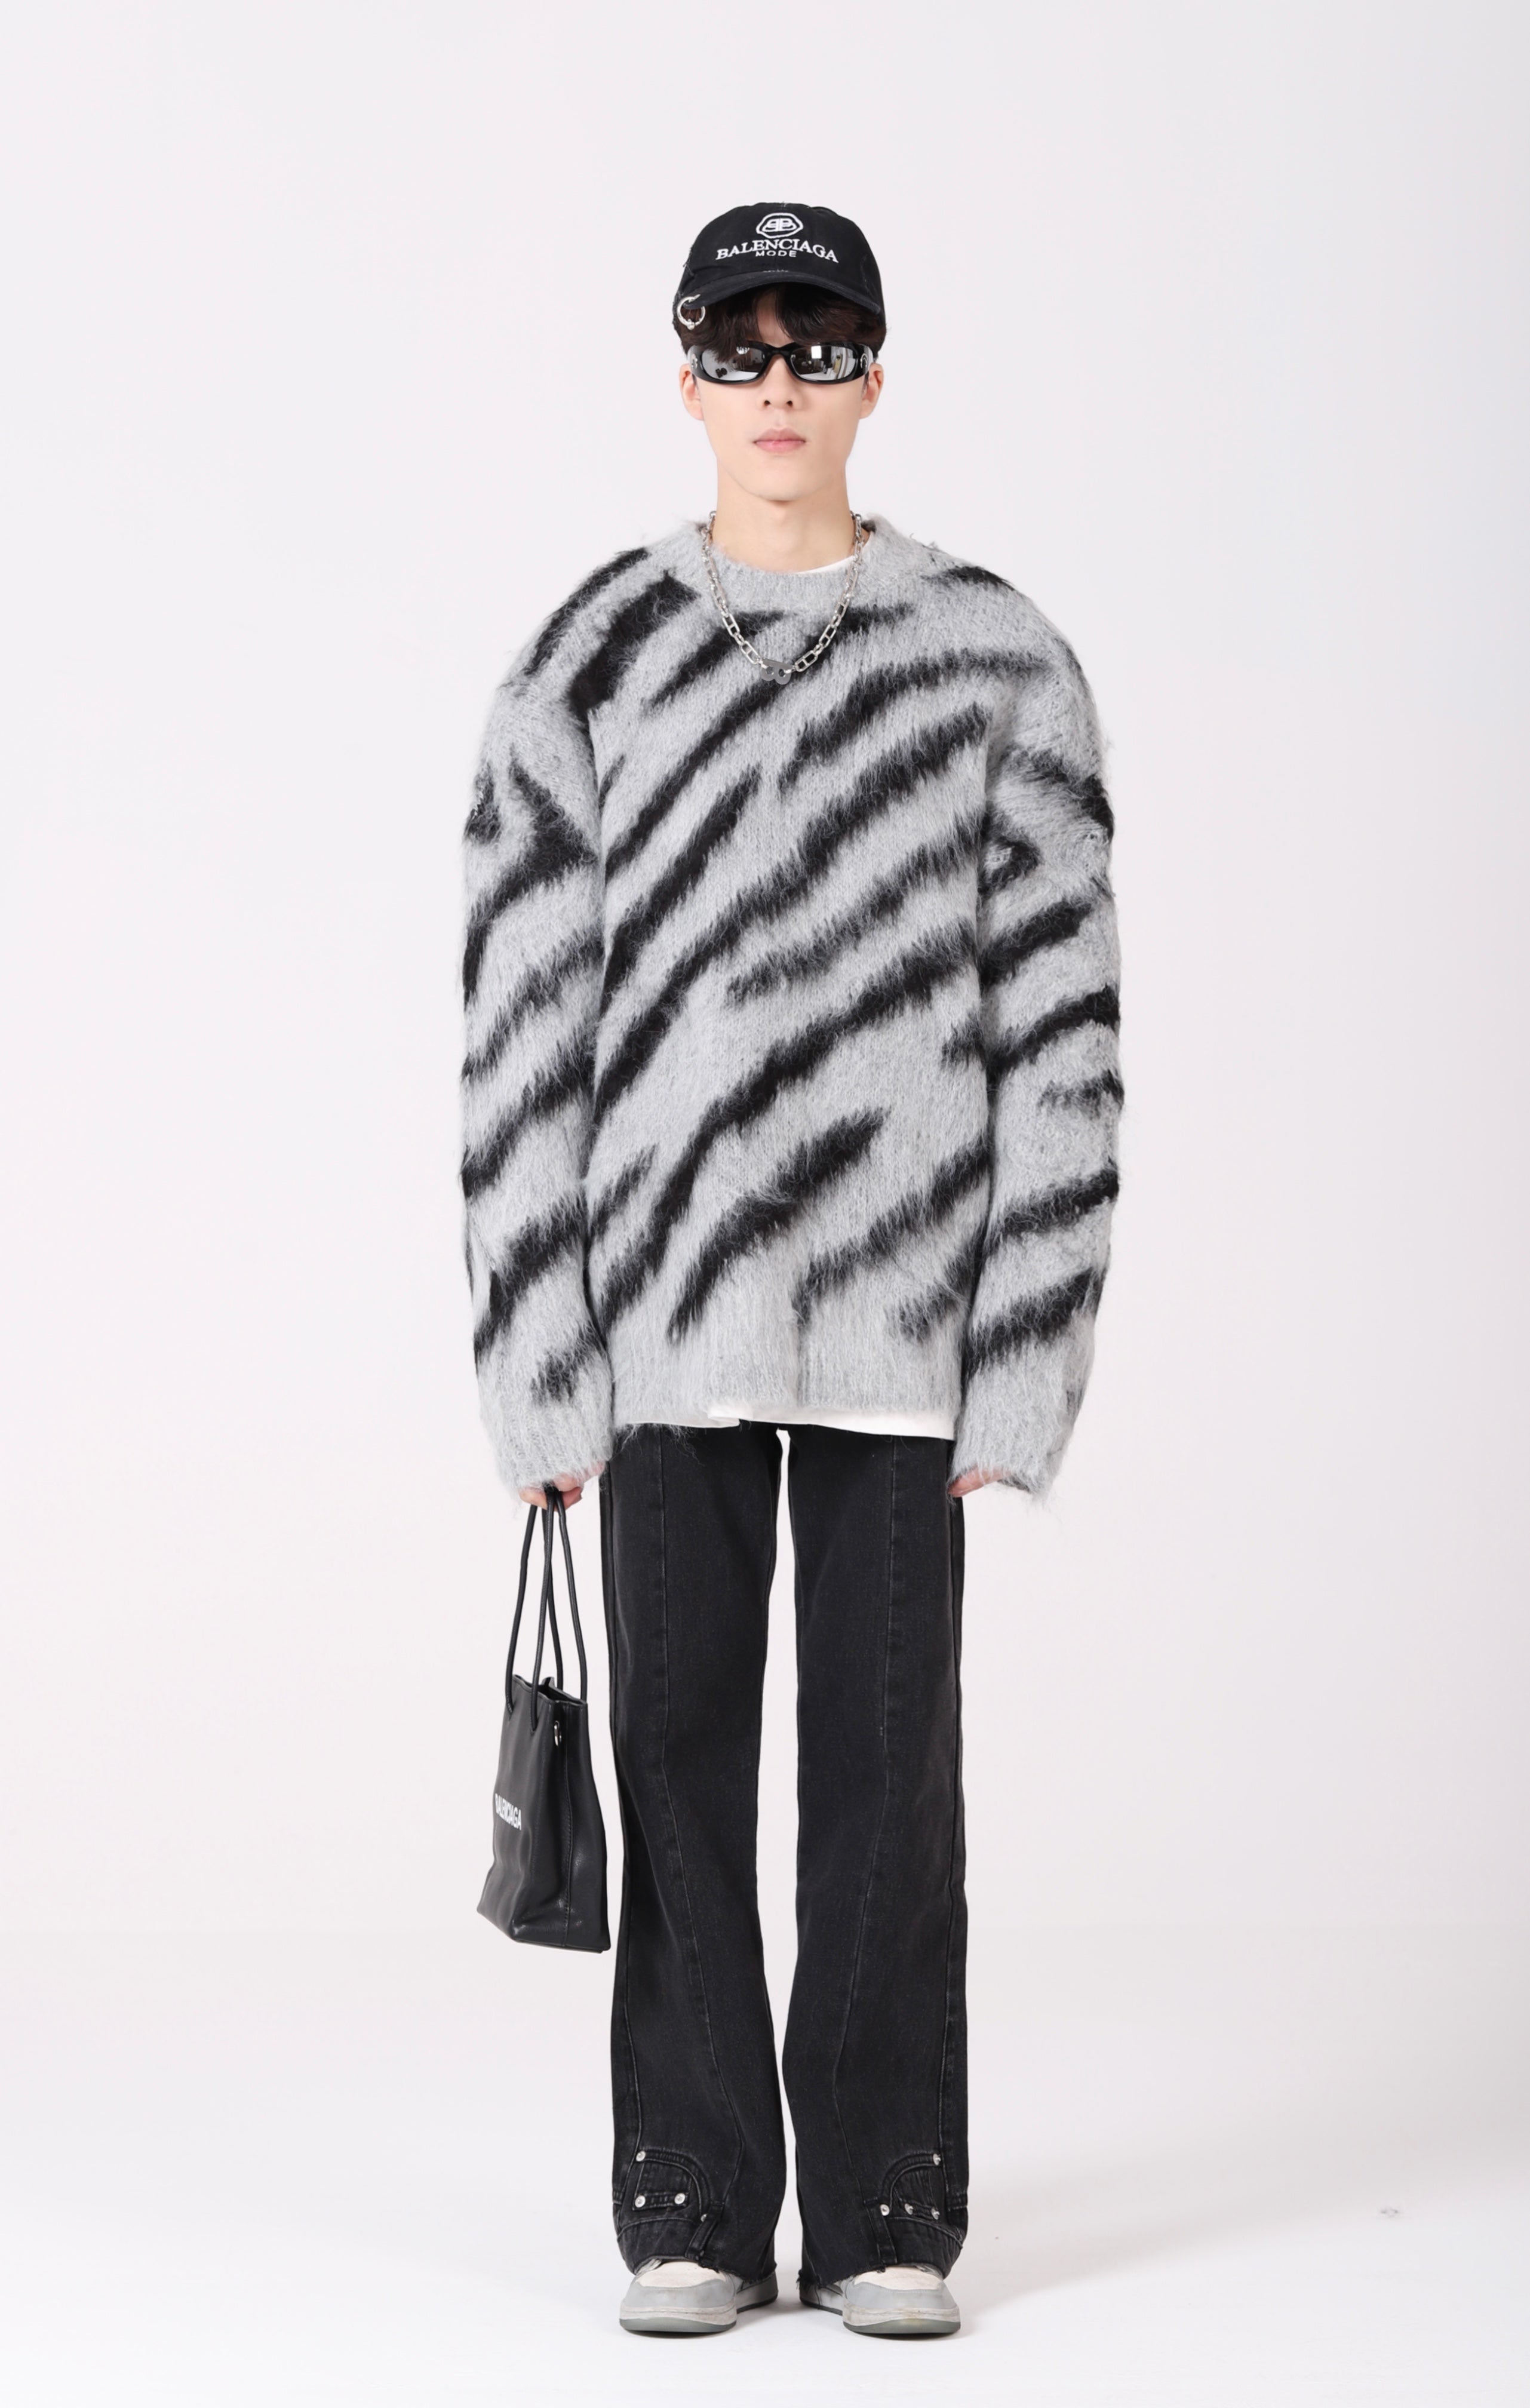 Zebra Print Fuzzy Sweater - nightcity clothing